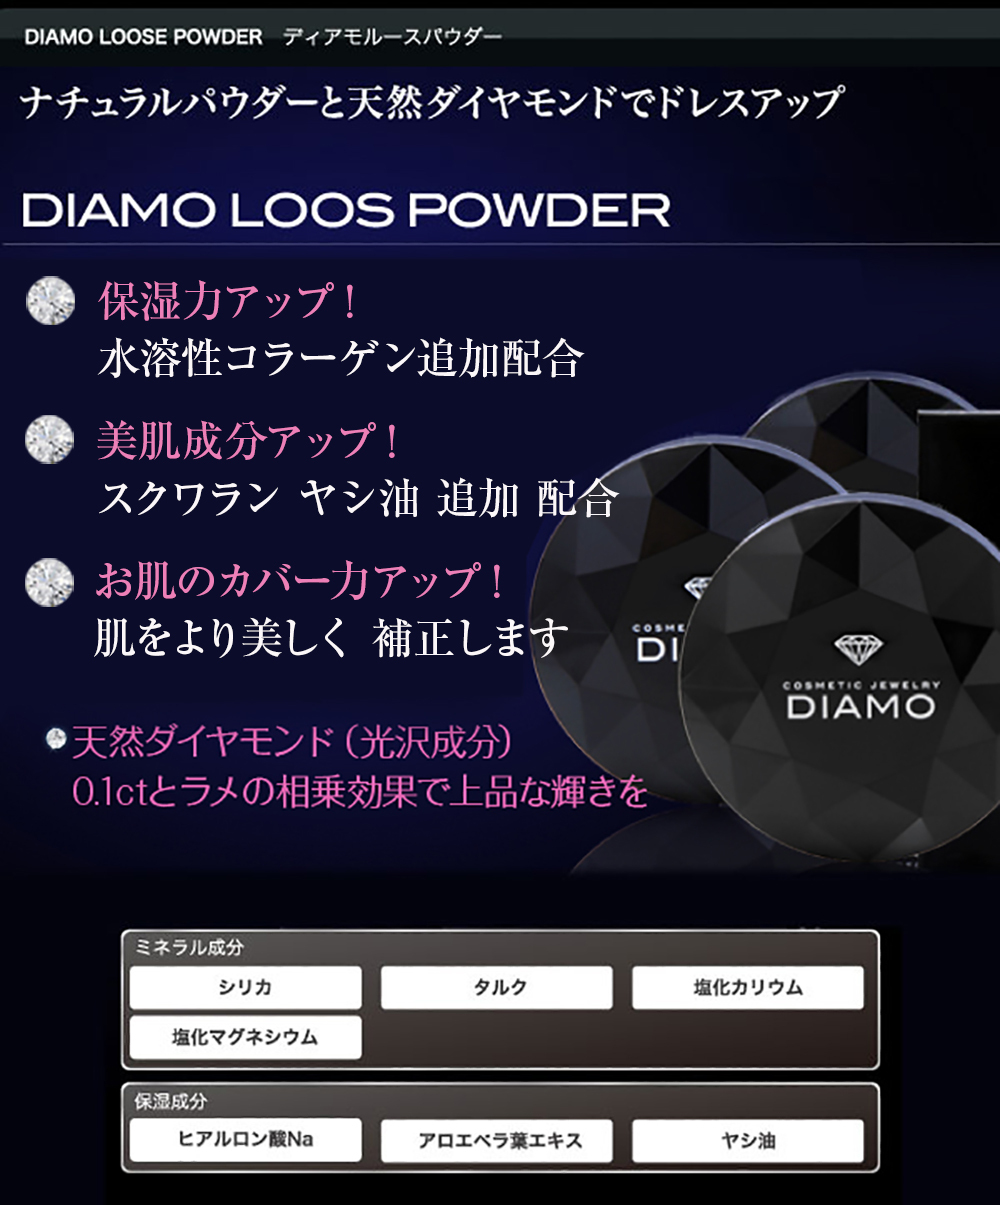 ディアモ ルースパウダー 8g DIAMO LOOSE POWDER あすつく ３個で送料無料(プレゼント ギフト) :diamo-loose:美人職人  プロ 業務用 美容専売品 - 通販 - Yahoo!ショッピング